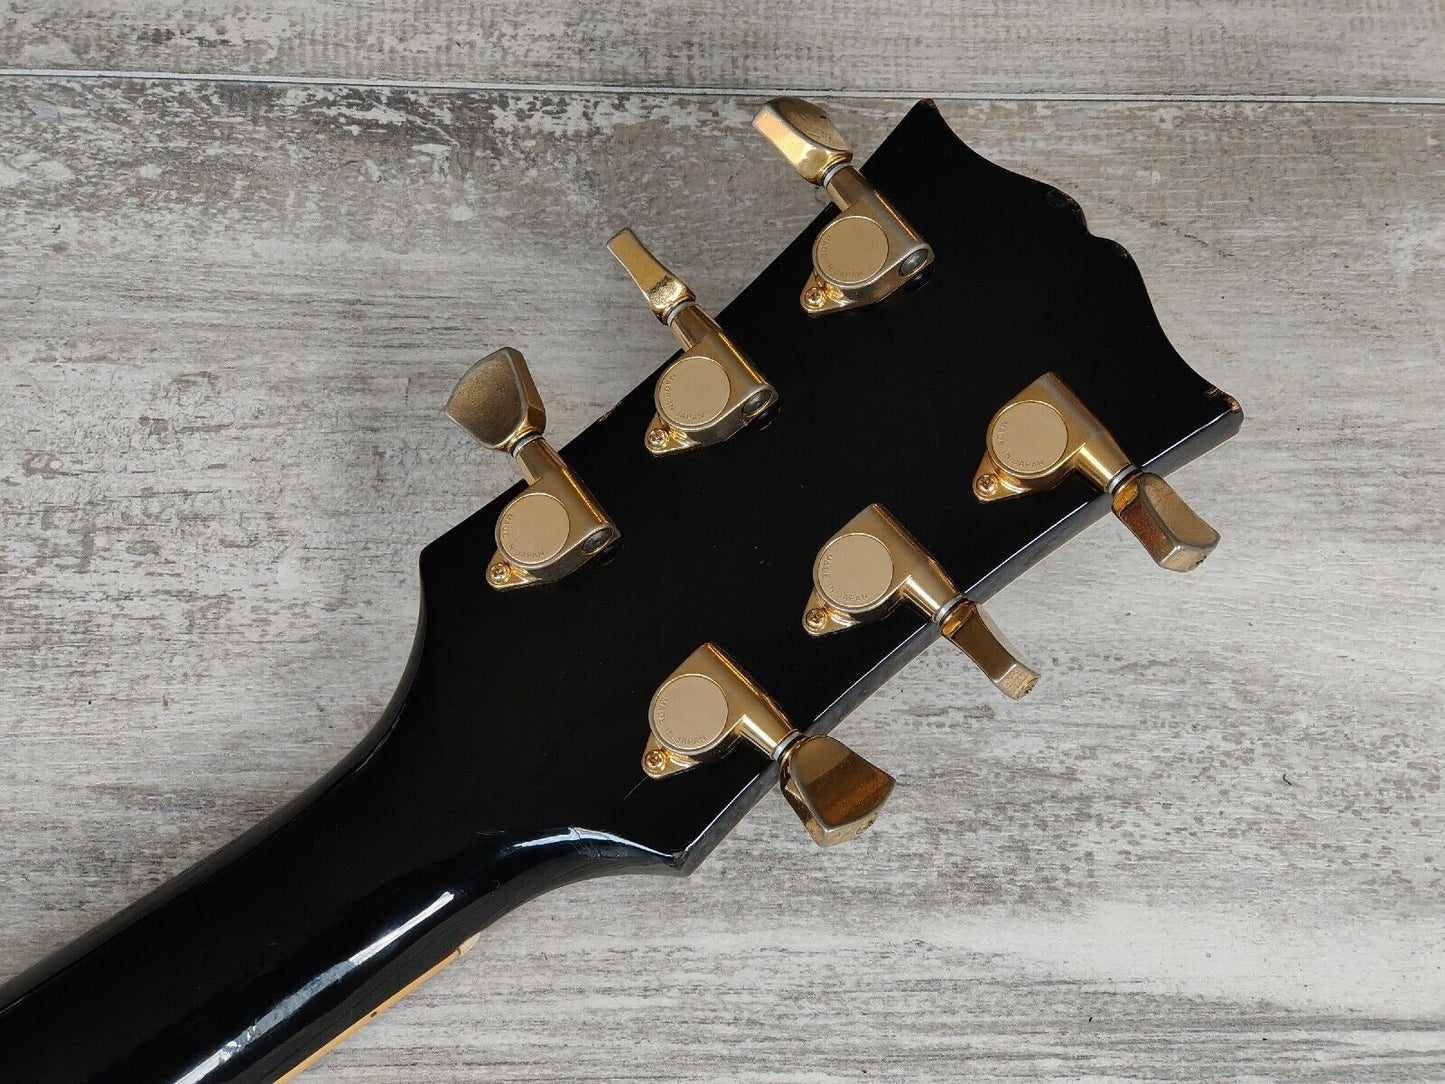 1990's Orville (Gibson) Japan LPC-75 '60's Reissue Les Paul Custom (Black)